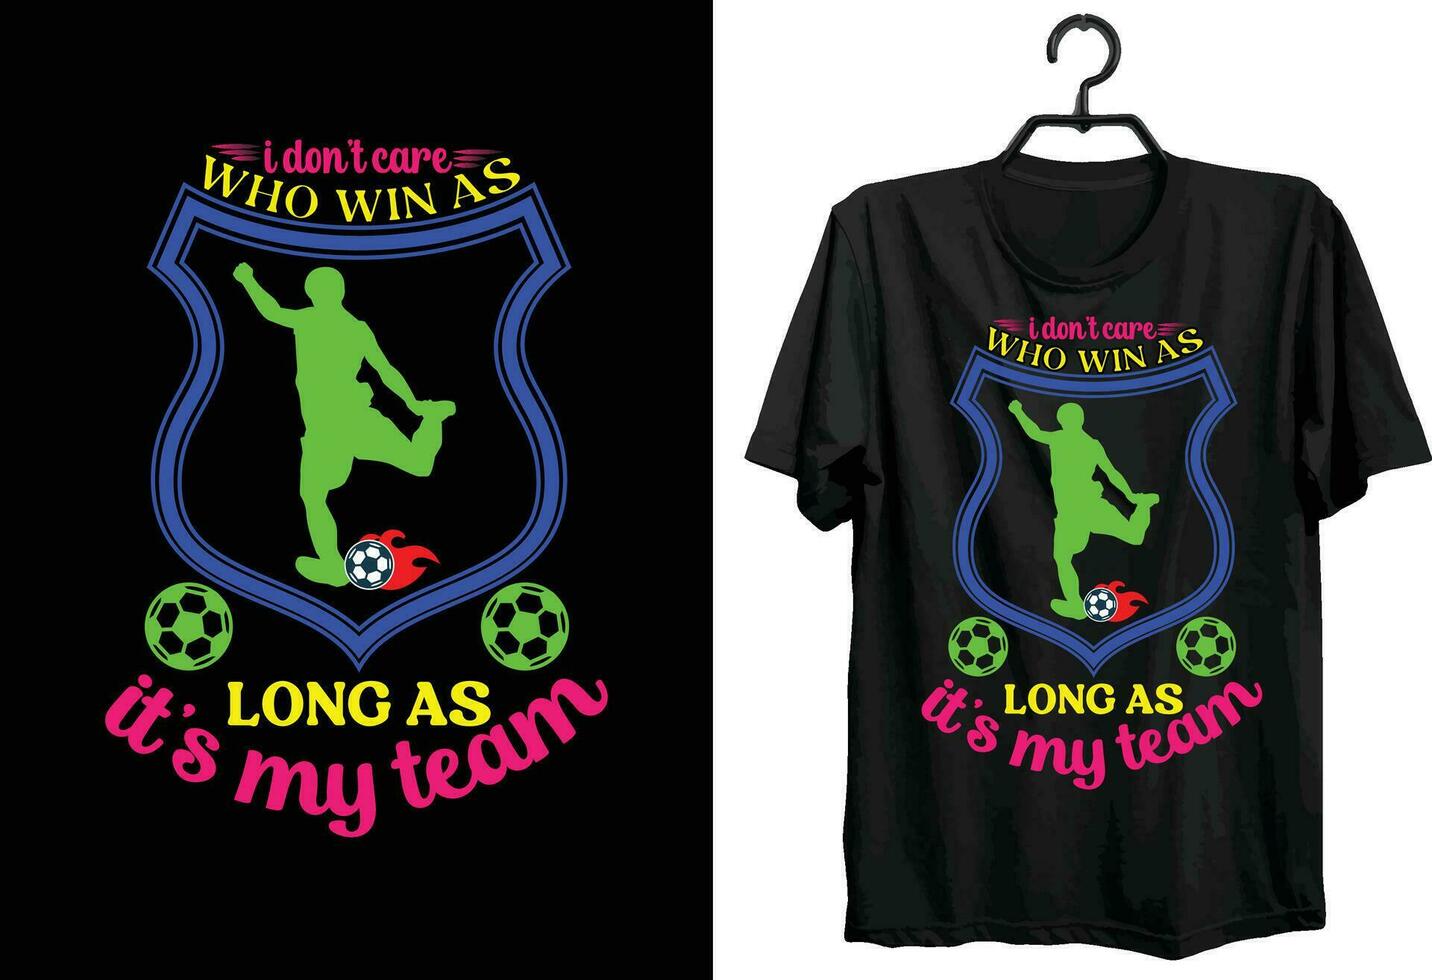 Fußball T-Shirt Design. Typografie, Brauch, Vektor T-Shirt Design. komisch Fußball T-Shirt Design zum Fußball Liebhaber.